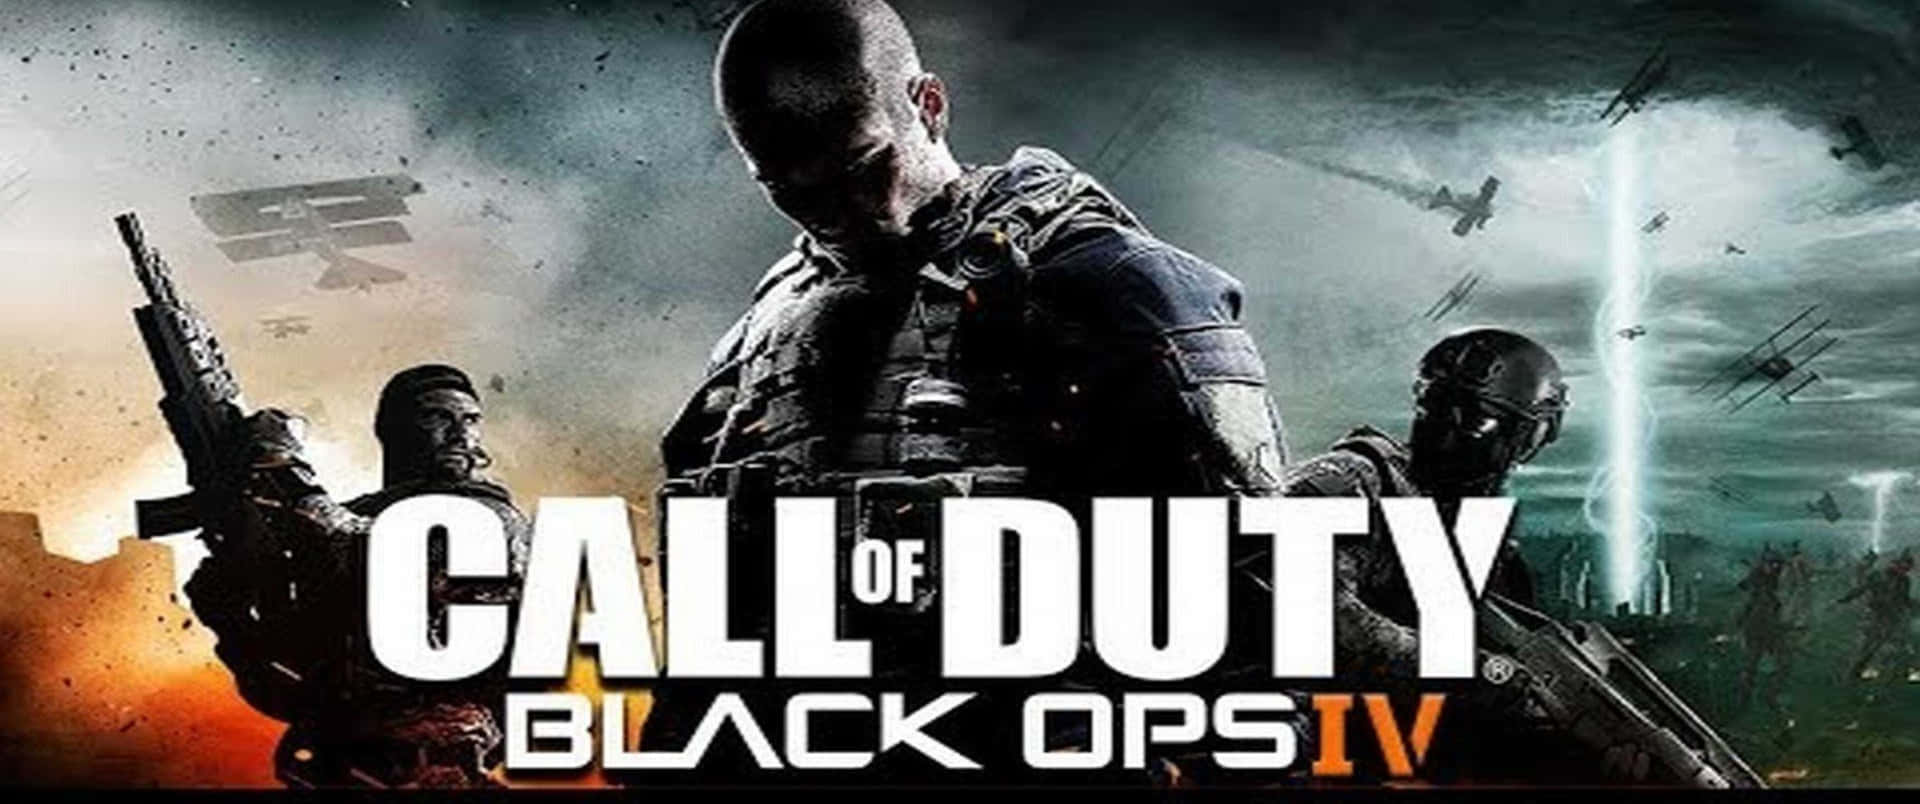 Call Of Duty Black Ops Iv Pc Pc Pc Pc Pc Pc Pc P